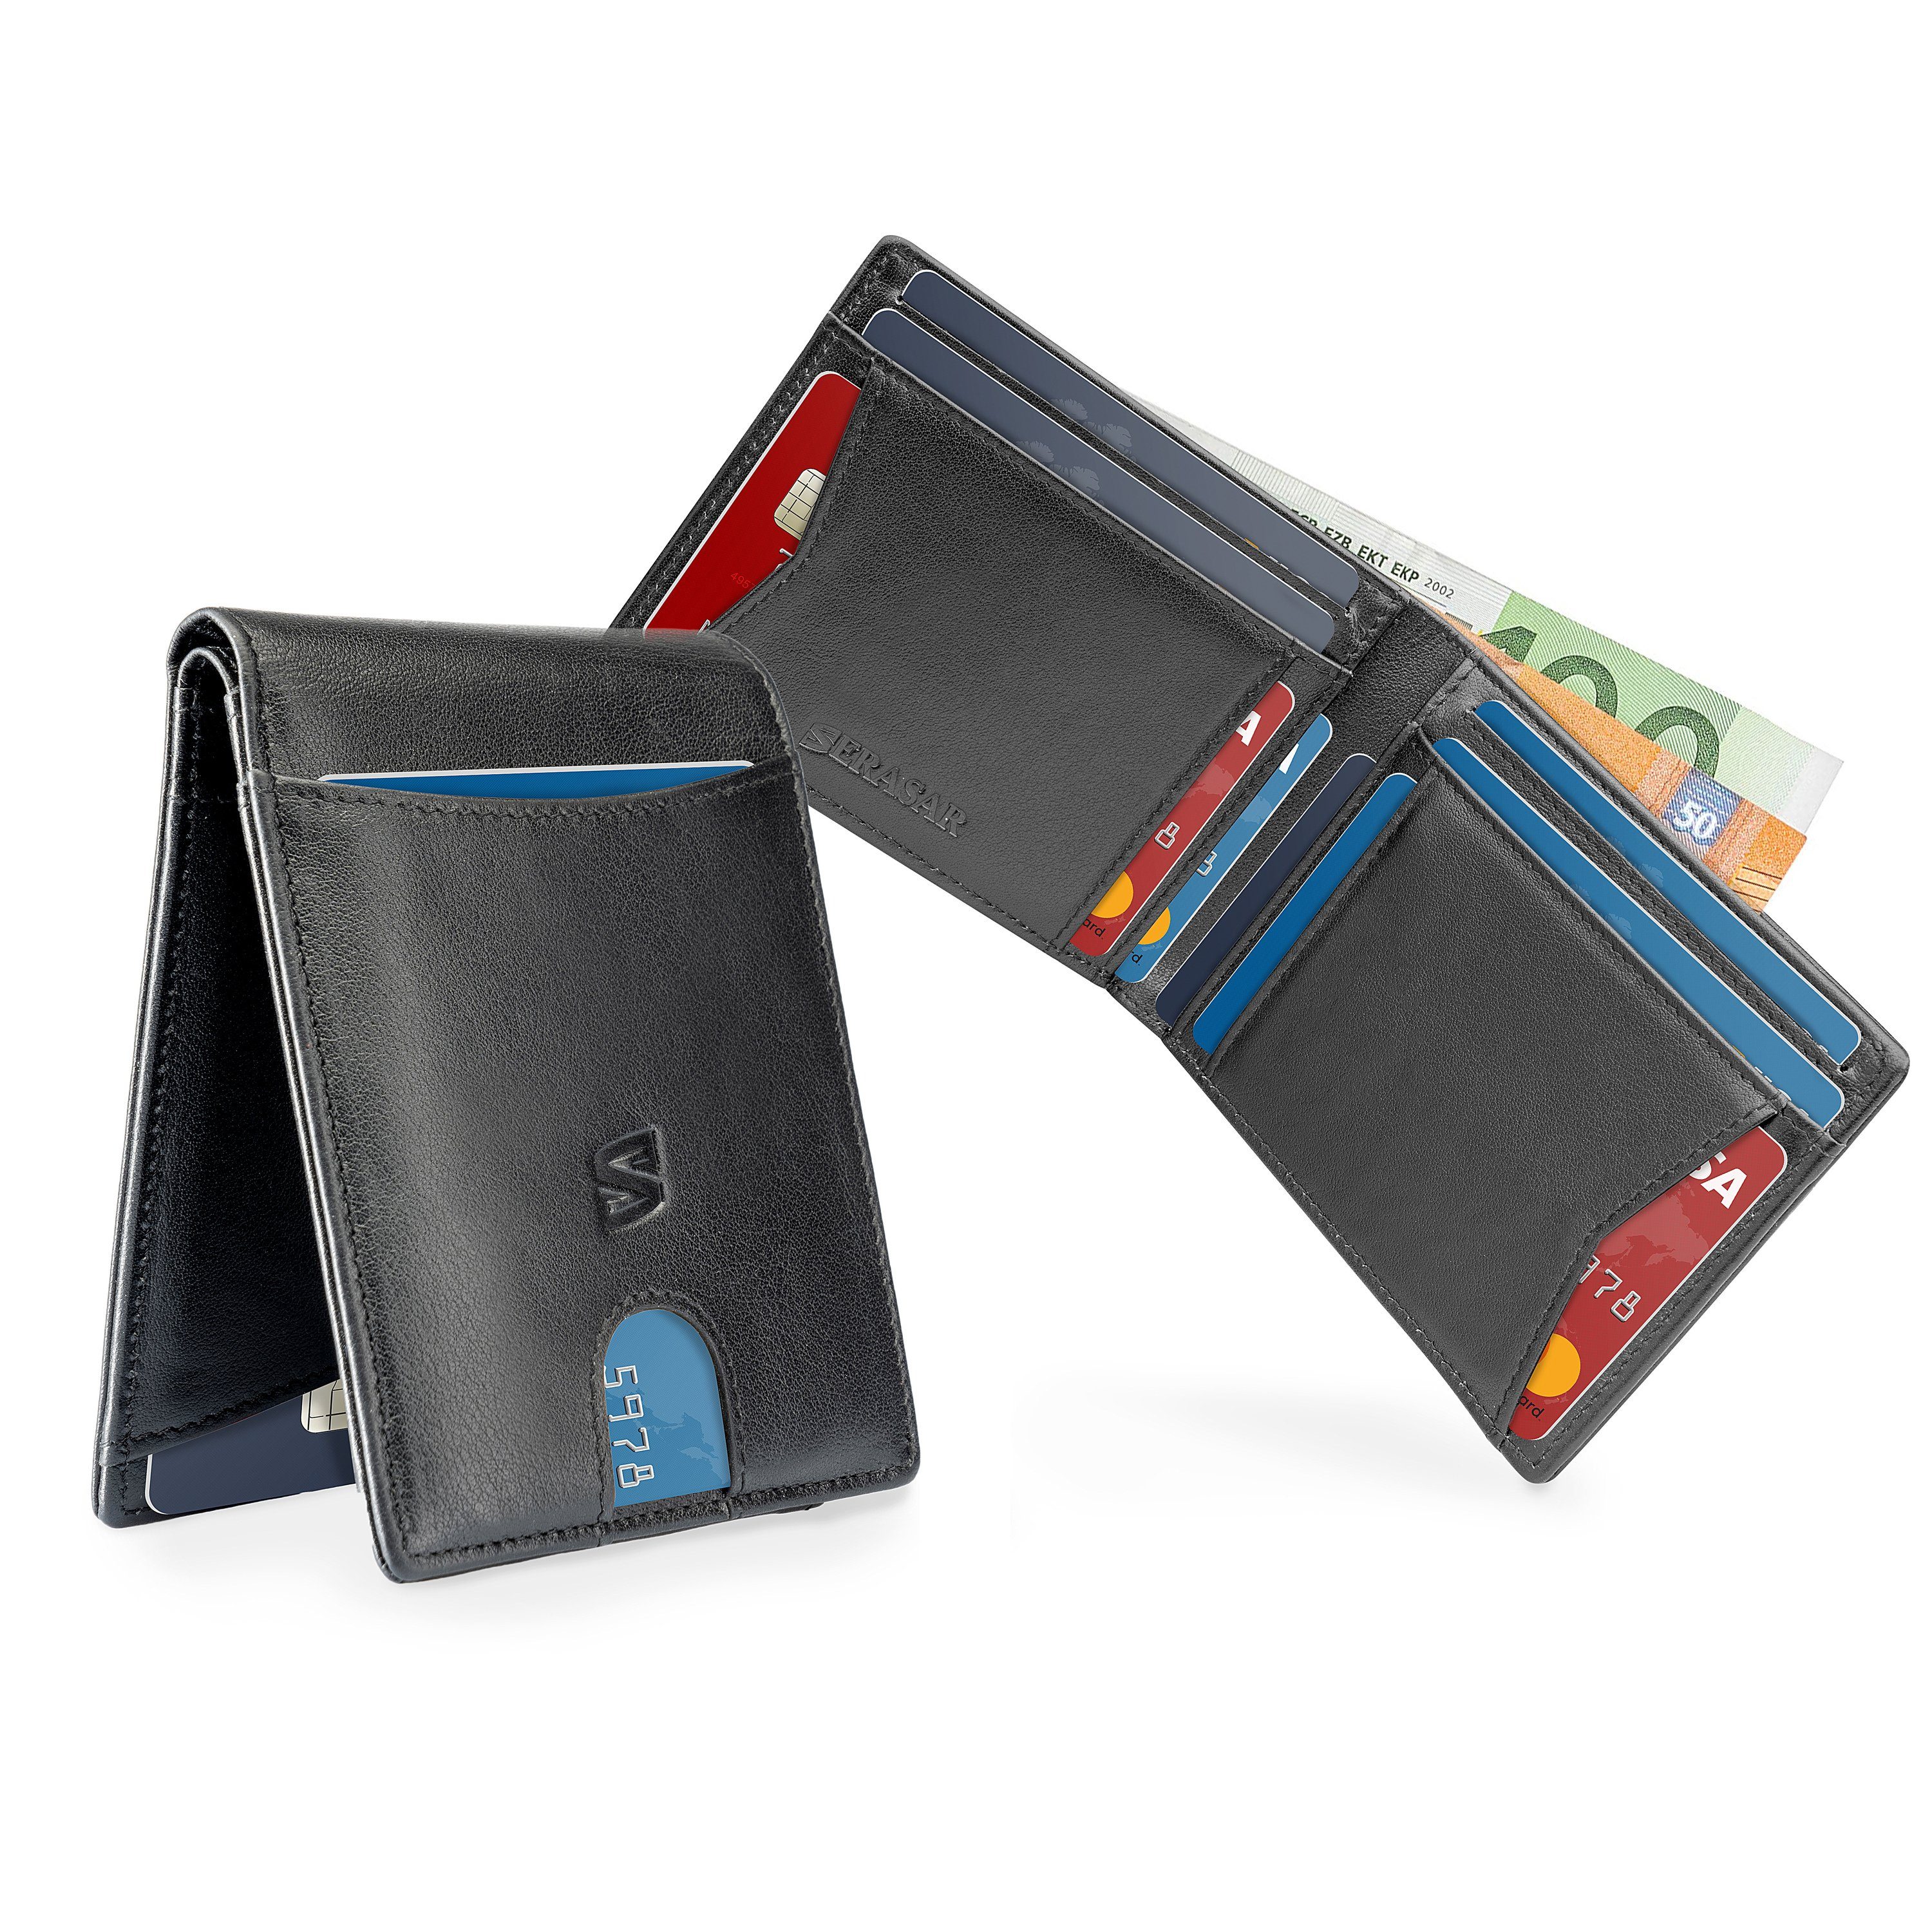 SERASAR Münzfach ohne Münzfach "Clever" mit Wallet inkl. Schwarz Geschenkbox Geldbörse (1-tlg), RFID-Schutz ohne